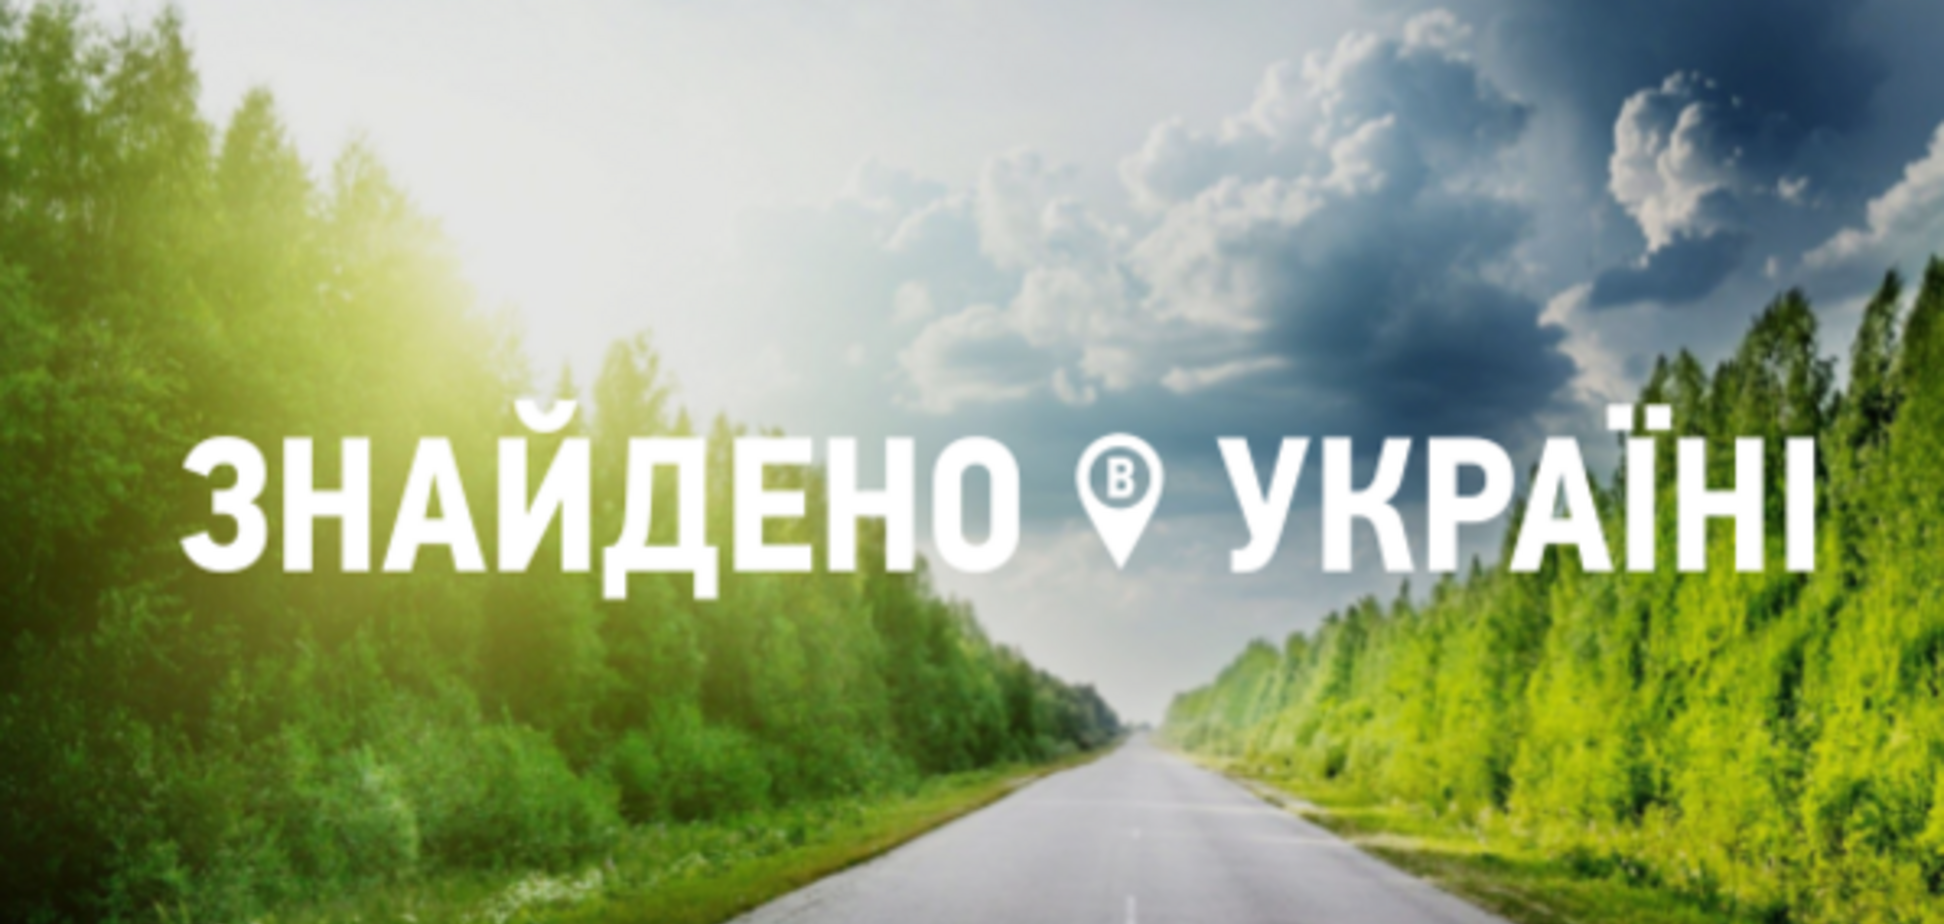 Трое путешественников ищут самые невероятные уголки Украины